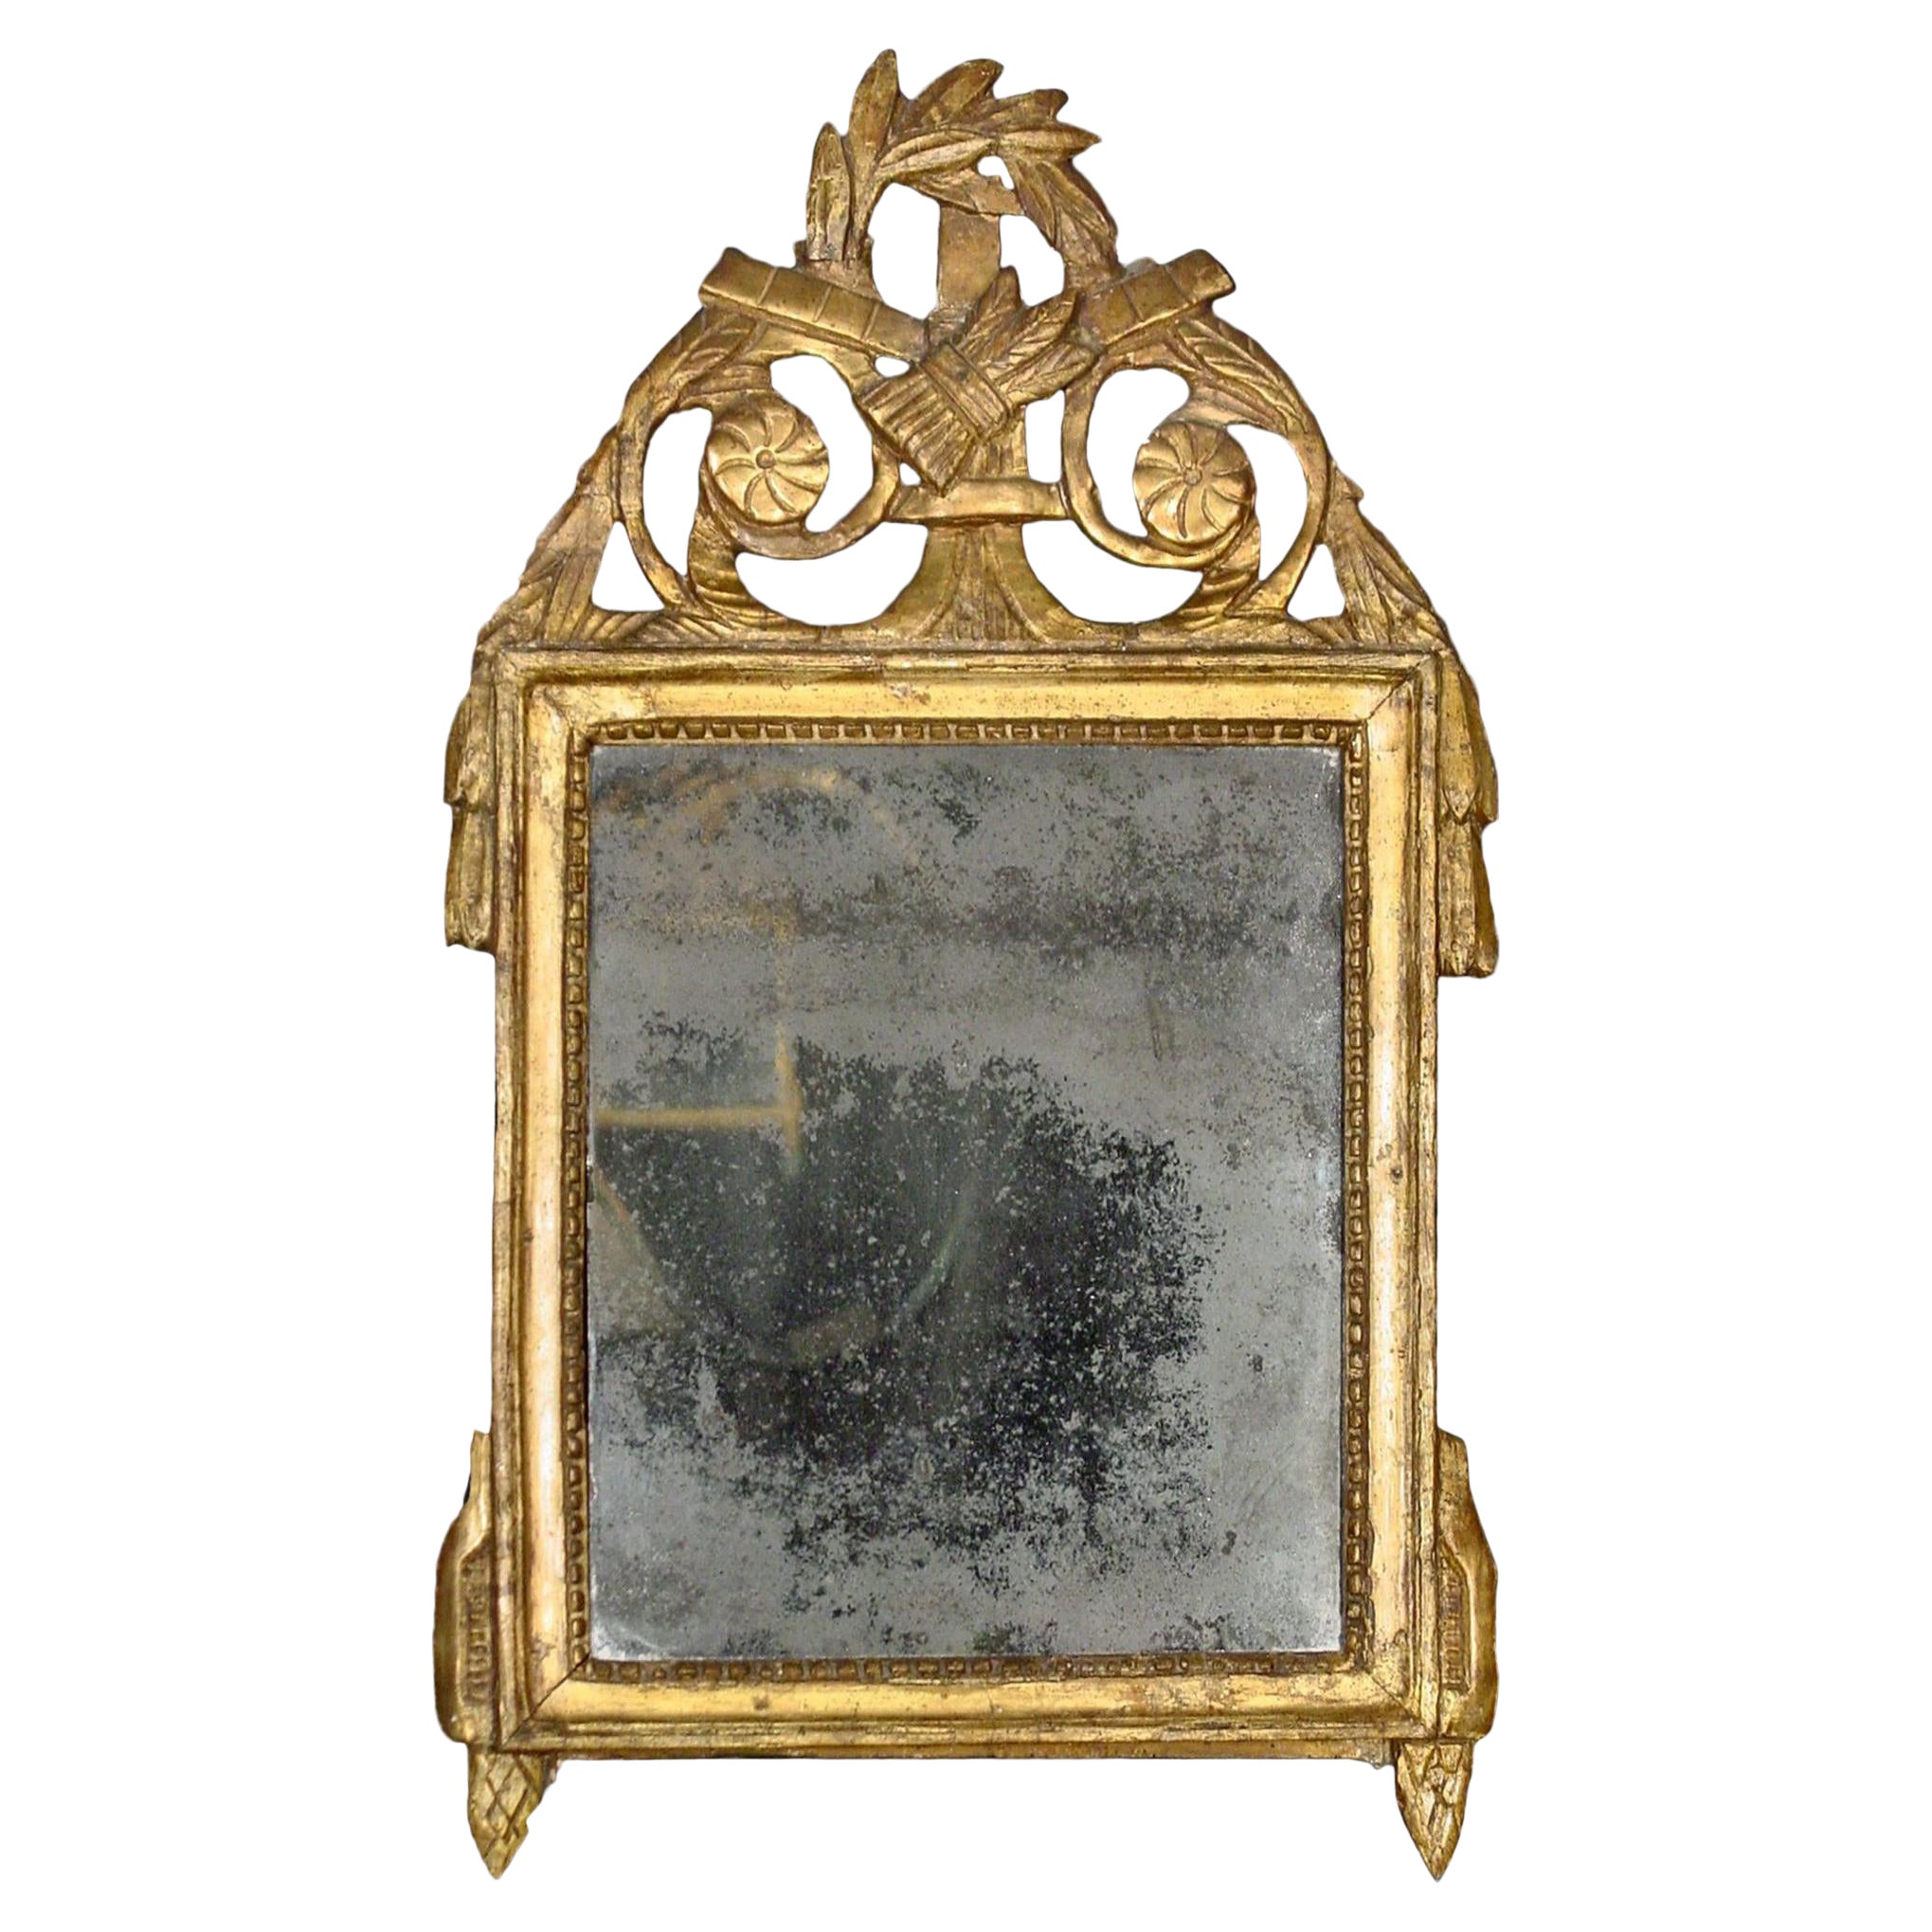 Miroir français d'époque Louis XVI du 18ème siècle, patiné vert et doré